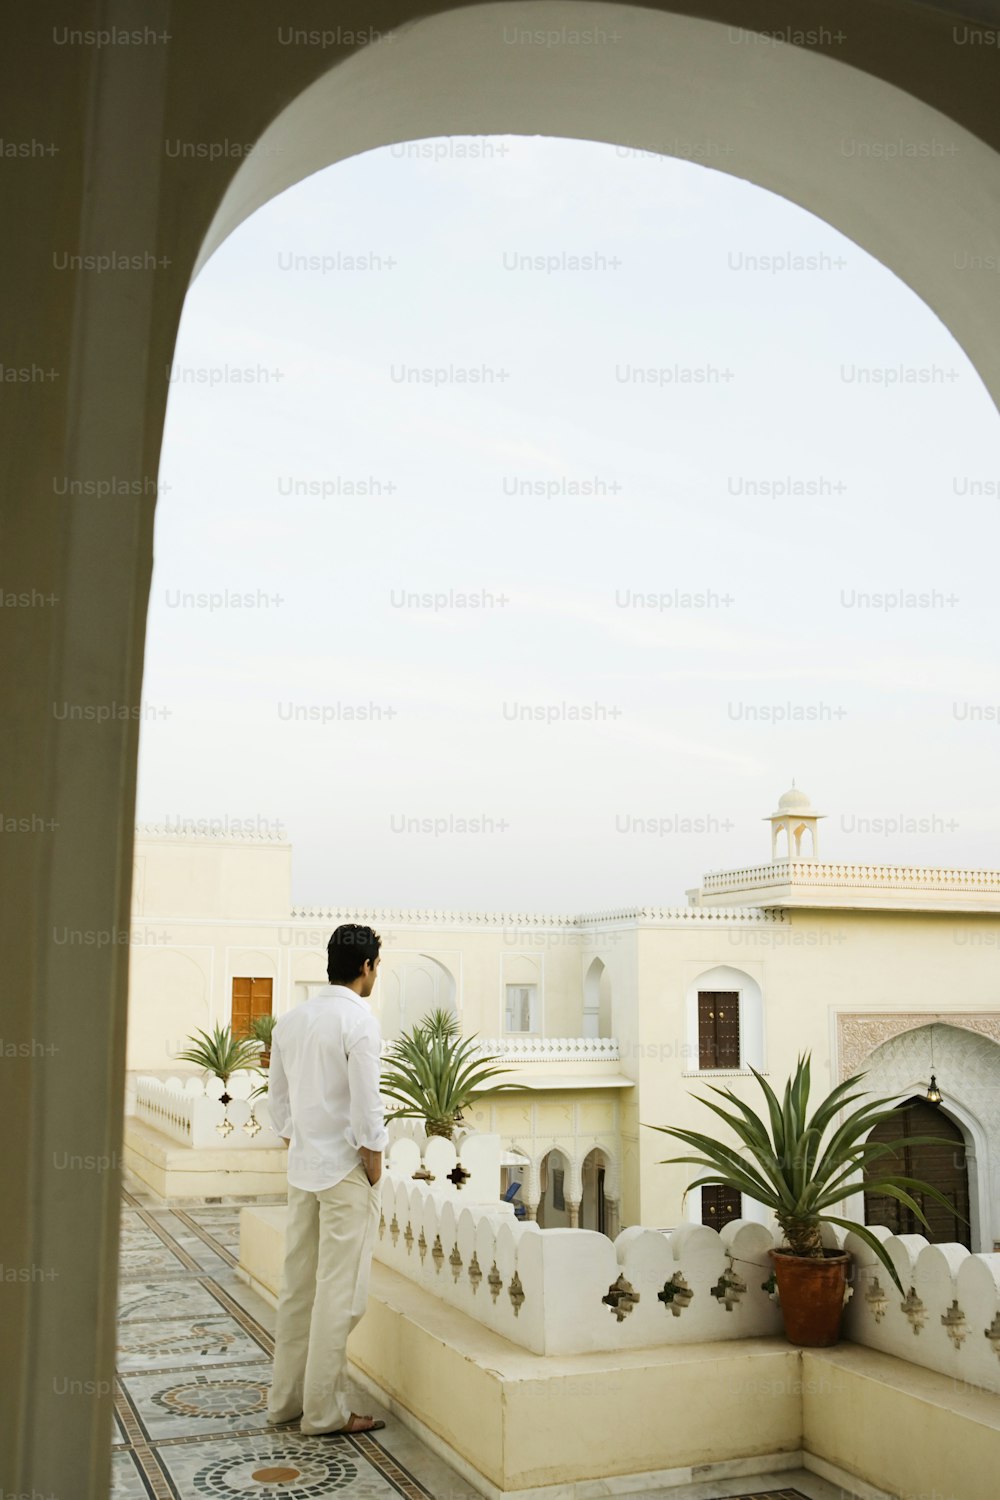 Un hombre parado en un balcón junto a una planta en maceta